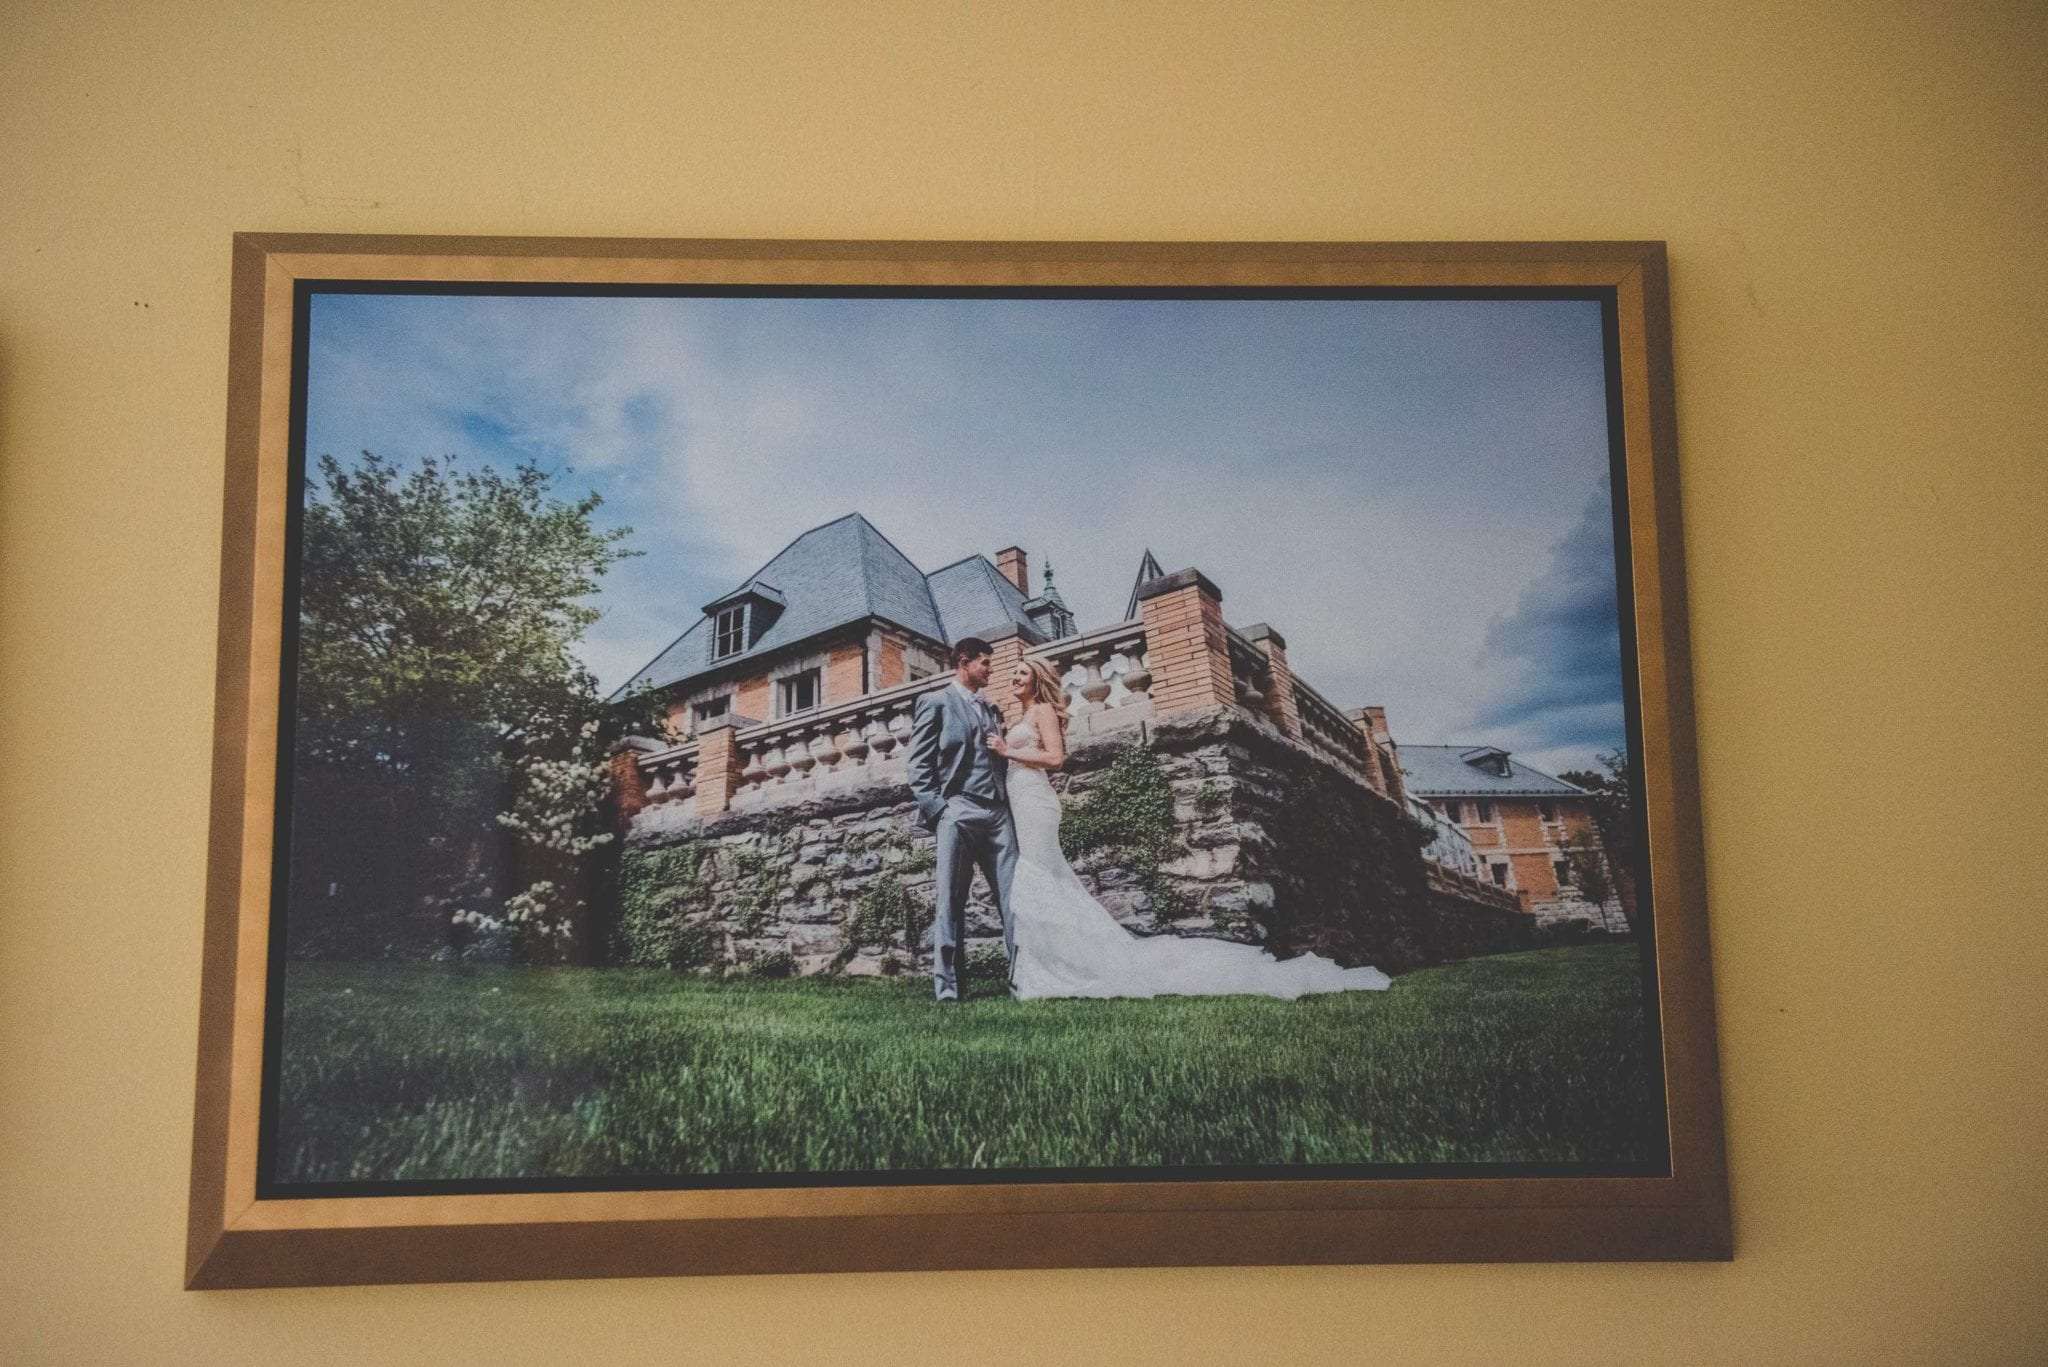 premium print products Philadelphia wedding photographer